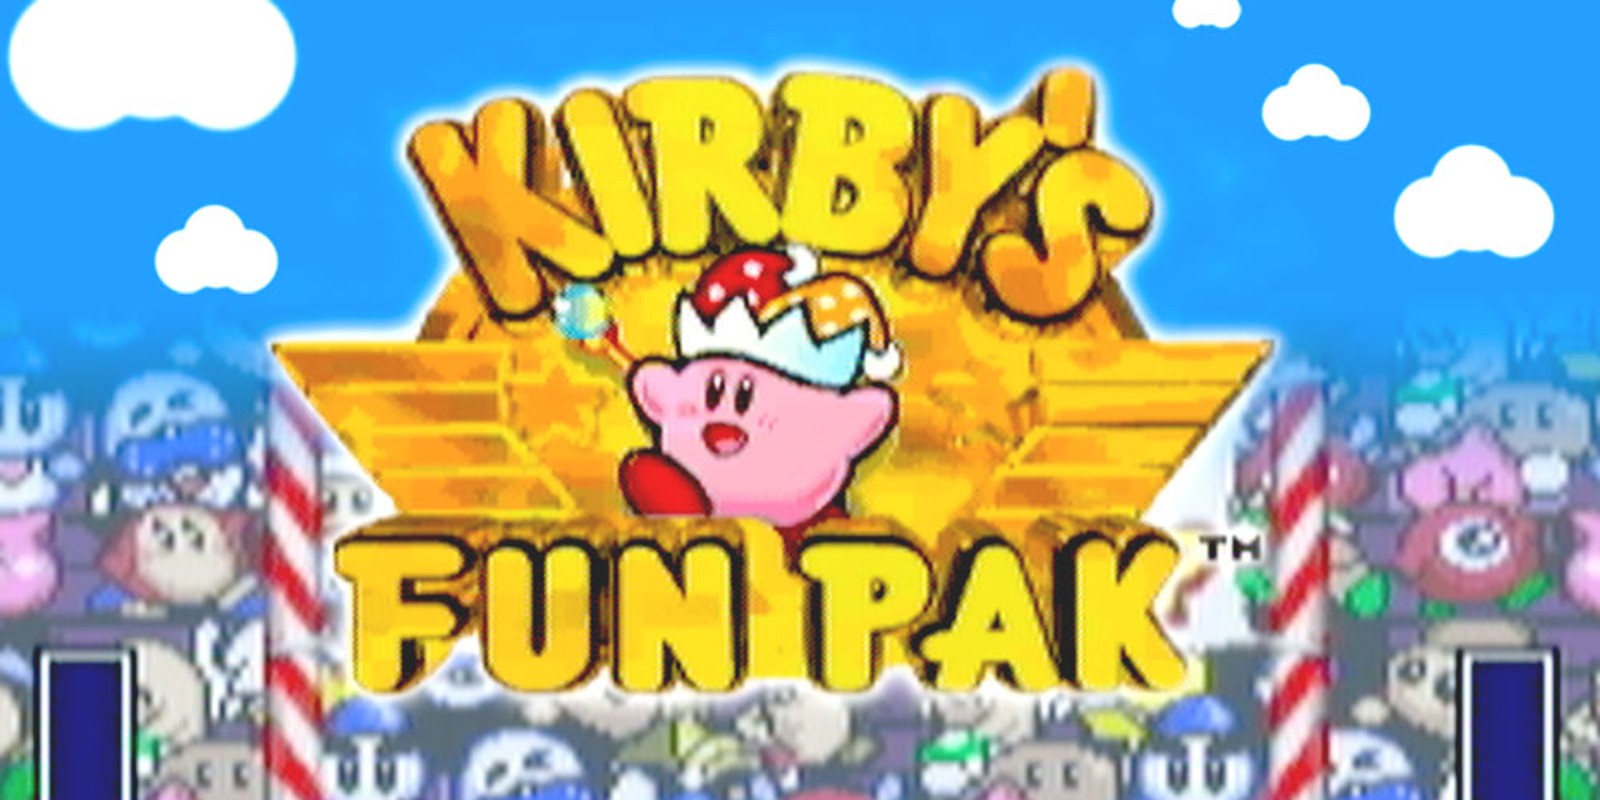 Kirby's Fun Pak™